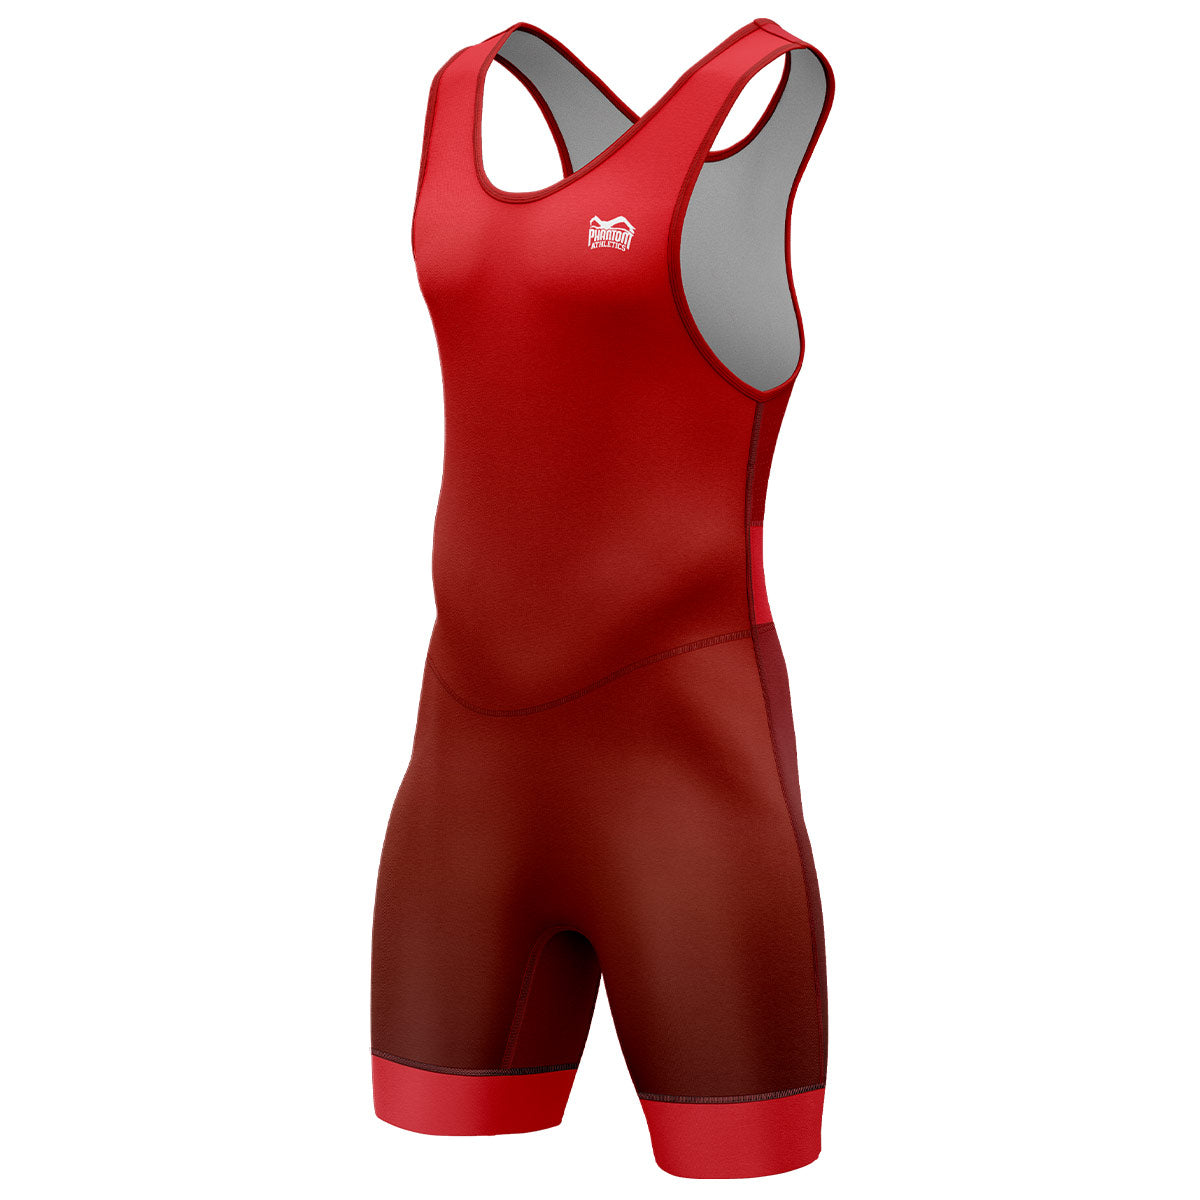 Phantom wrestlingový dres Apex v červené barvě, ideální pro trénink i závody. Vyrobeno podle oficiálních směrnic UWW.